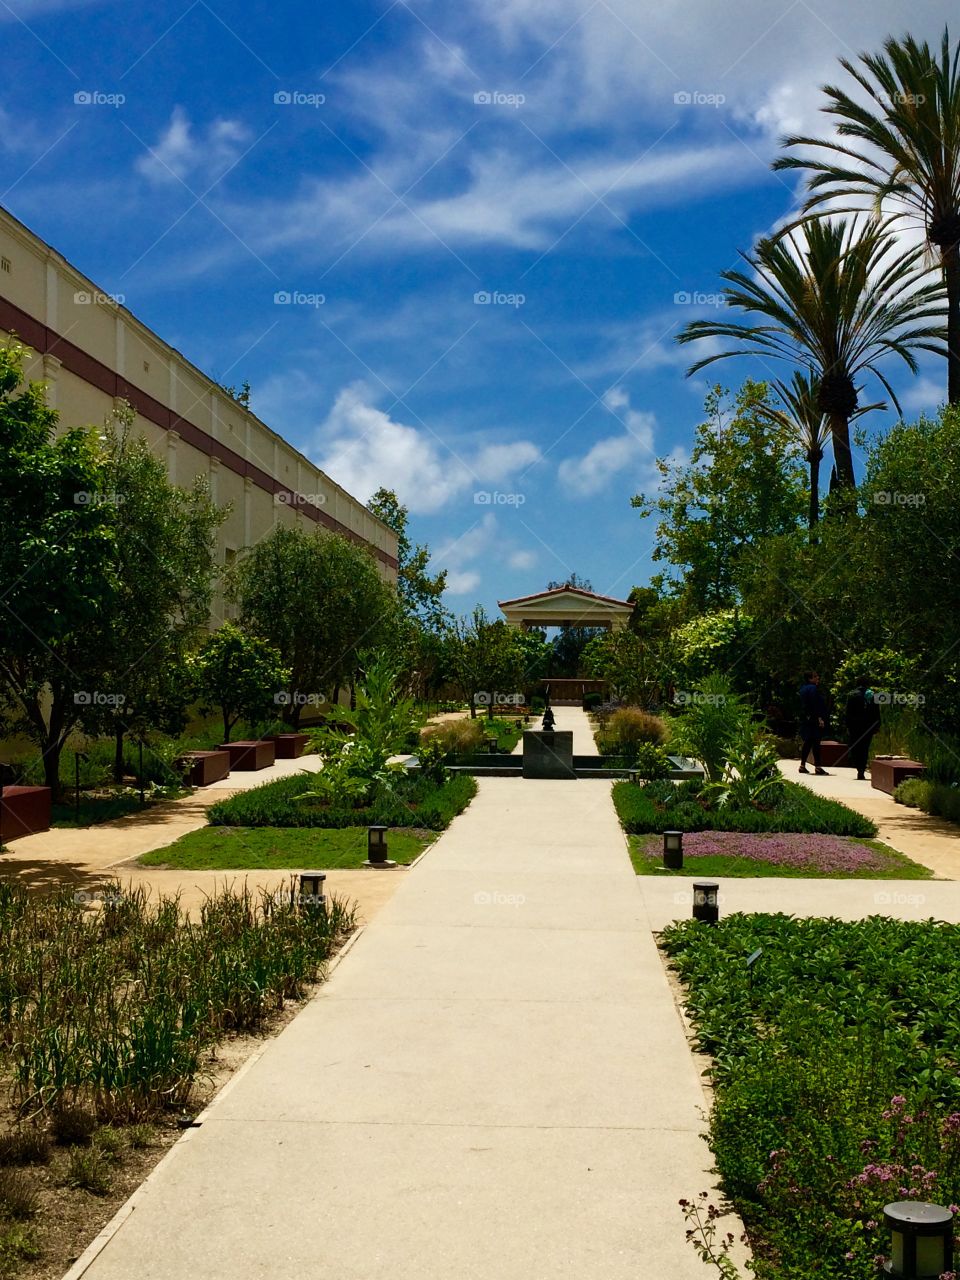 Getty villa gardens